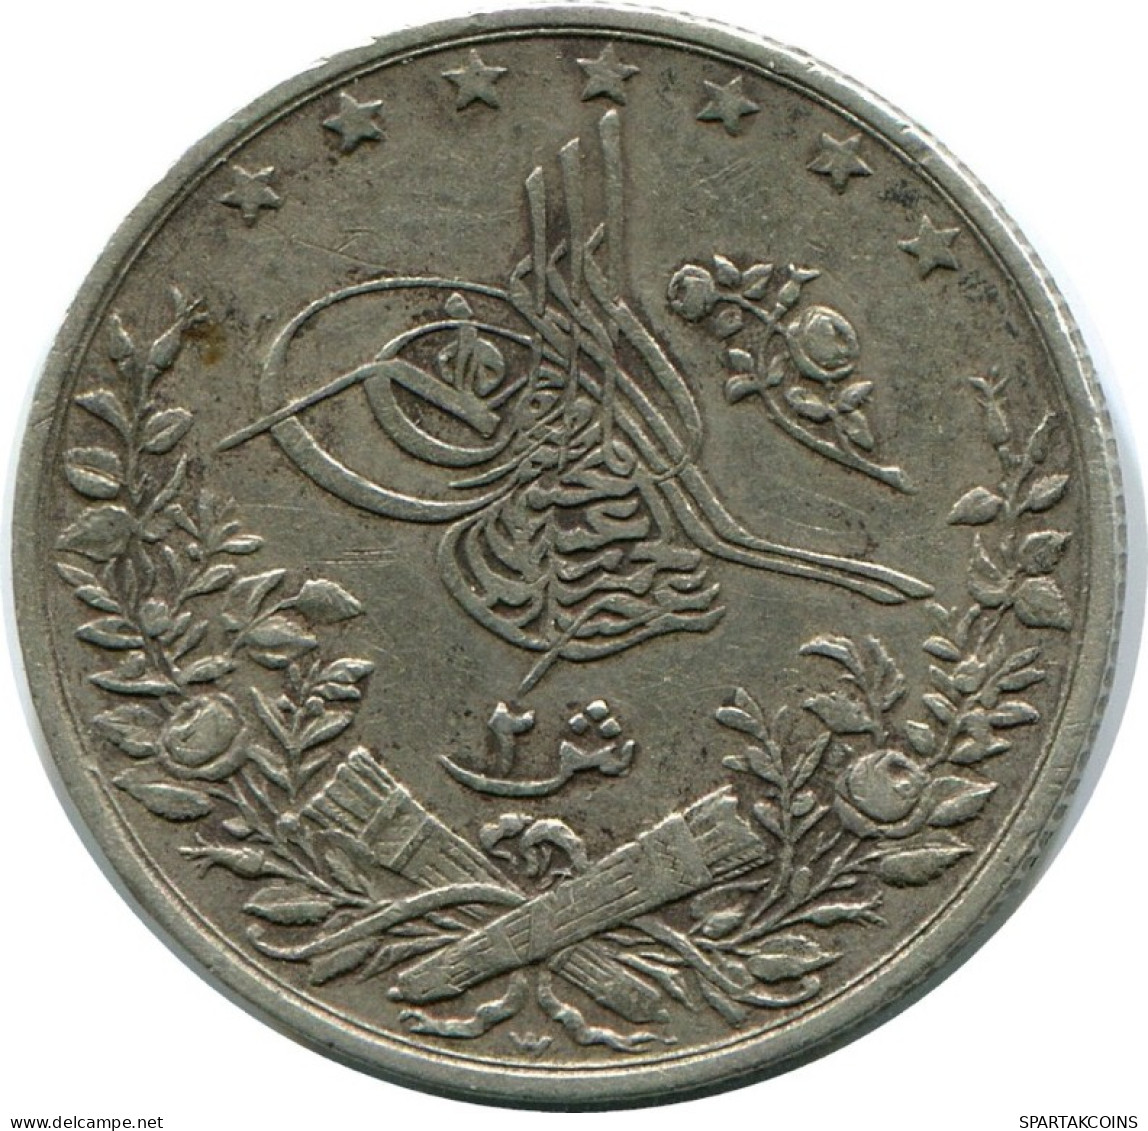 2 QIRSH 1884 EGYPT Islamic Coin #AH261.10.U.A - Egypt